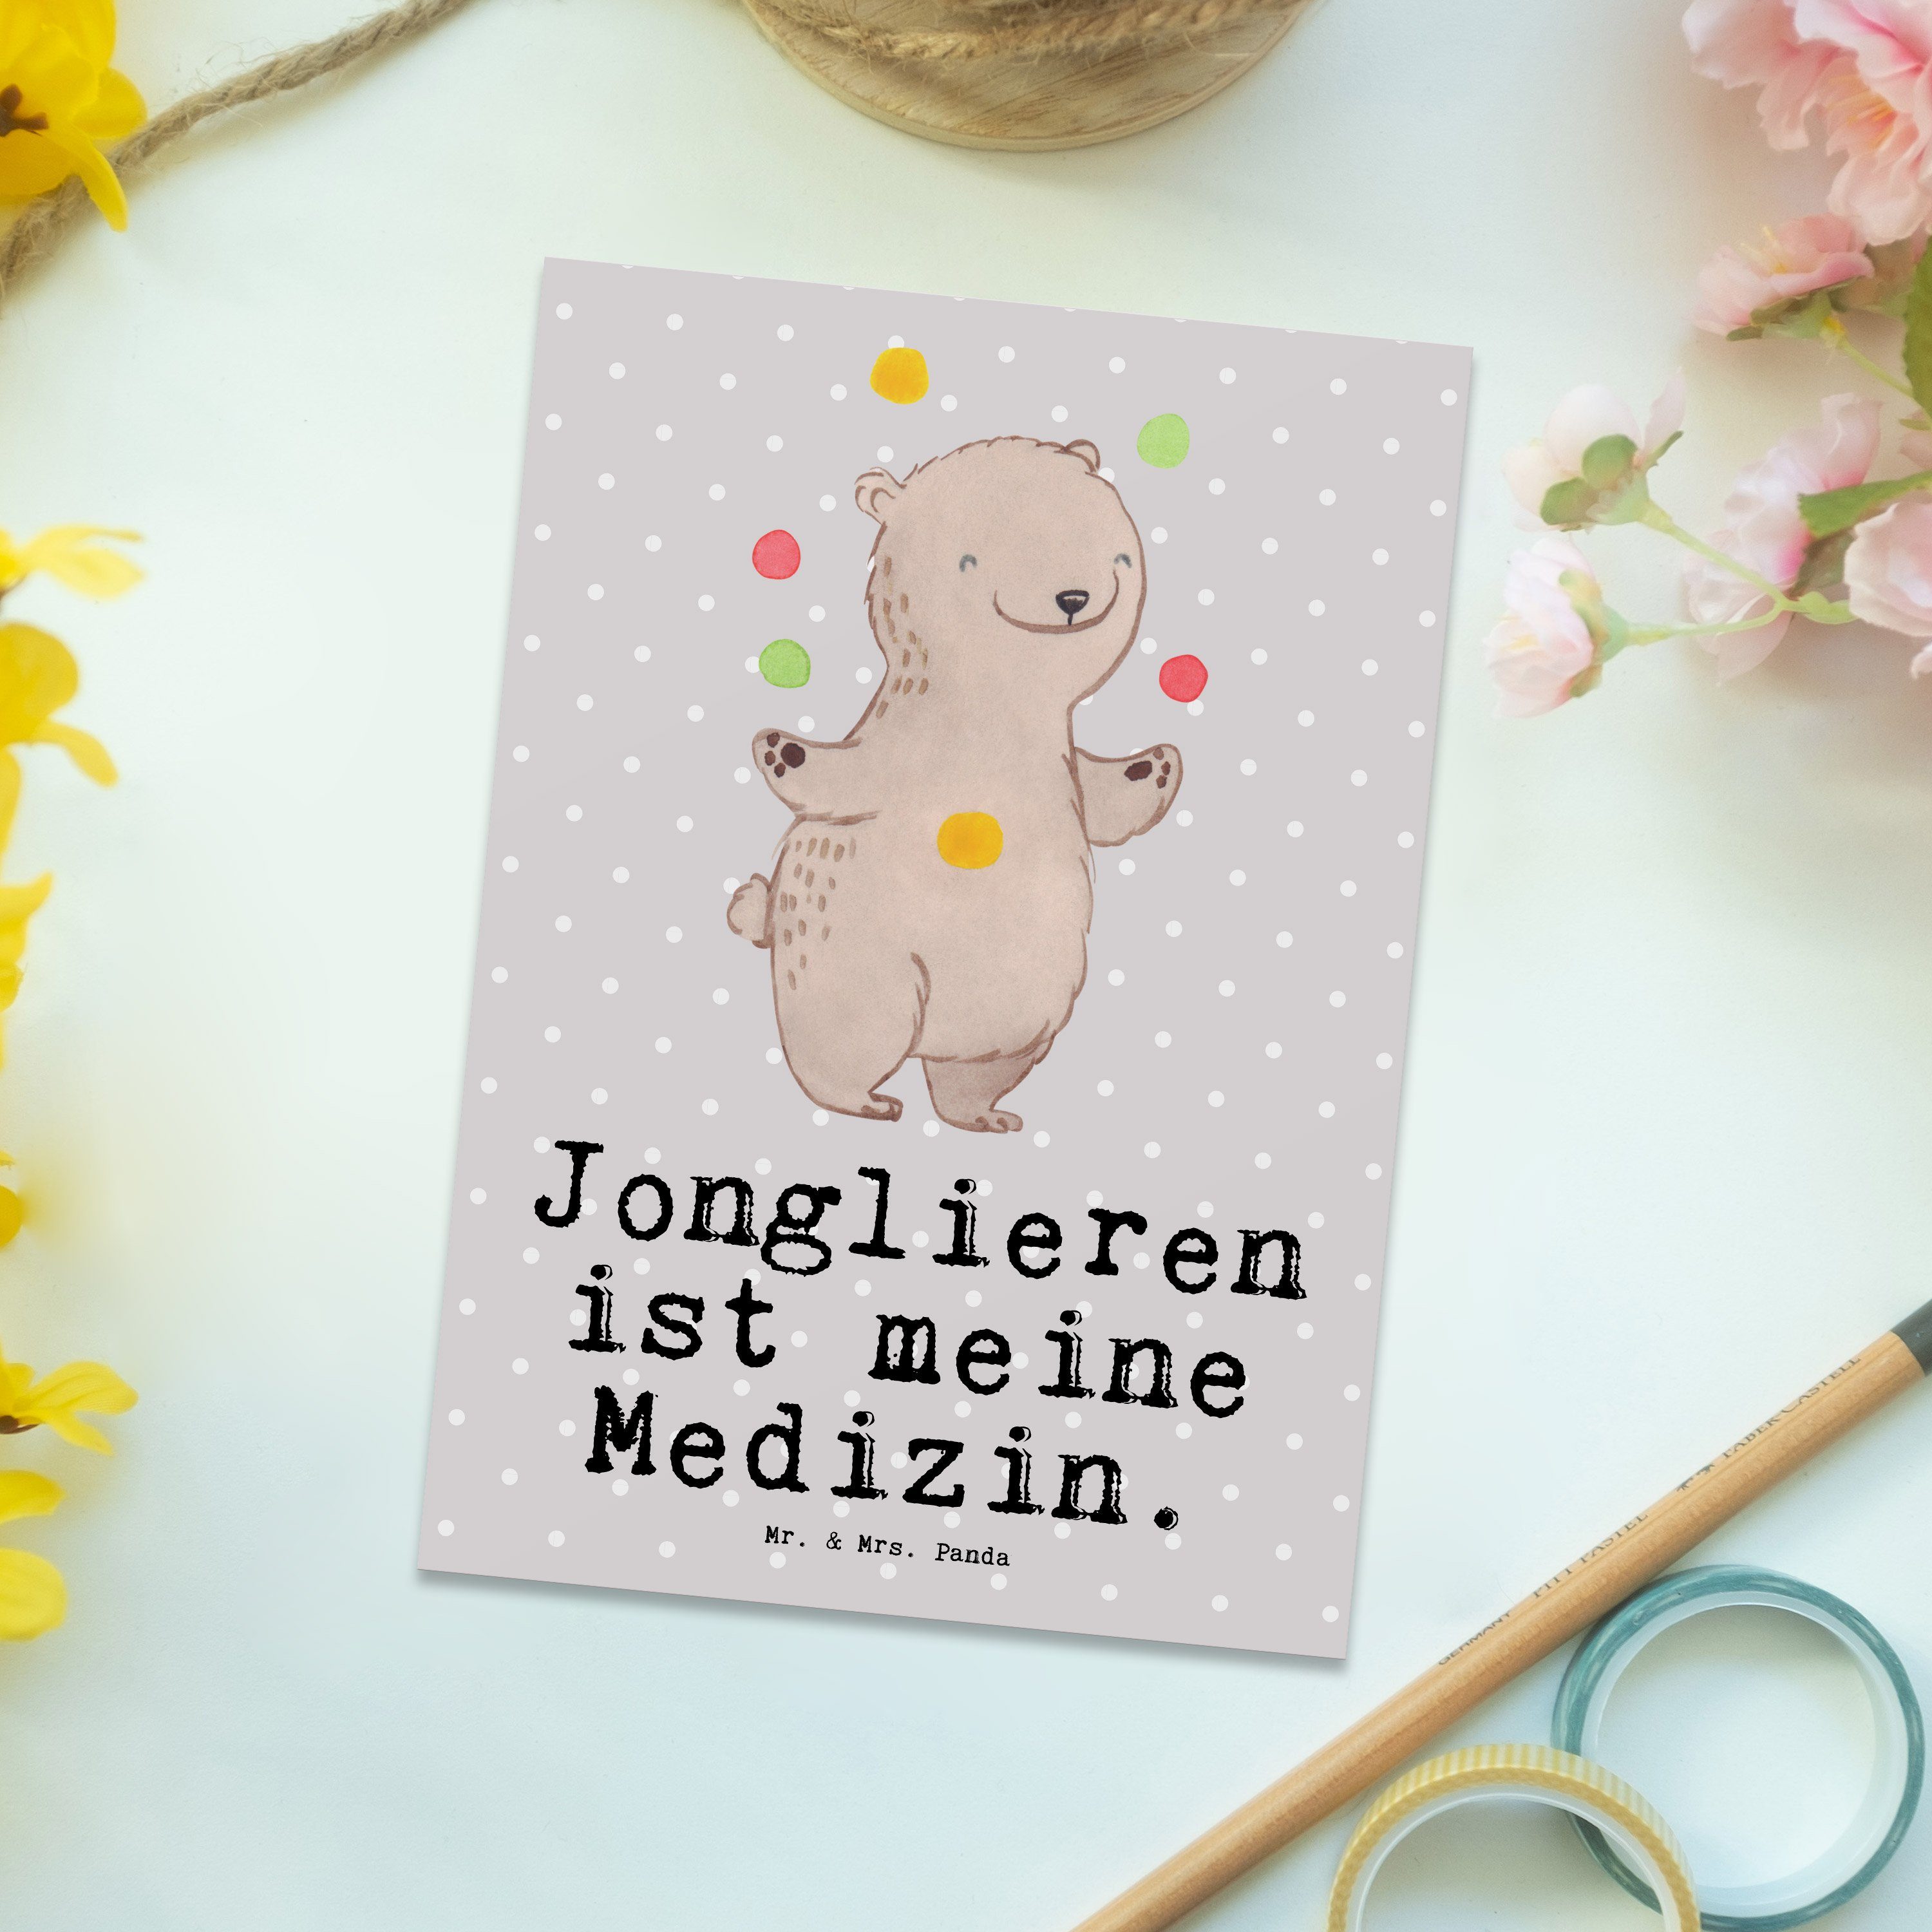 Mr. & Mrs. Panda Postkarte Bär Jonglieren Medizin - Grau Pastell - Geschenk, Geschenkkarte, Arti